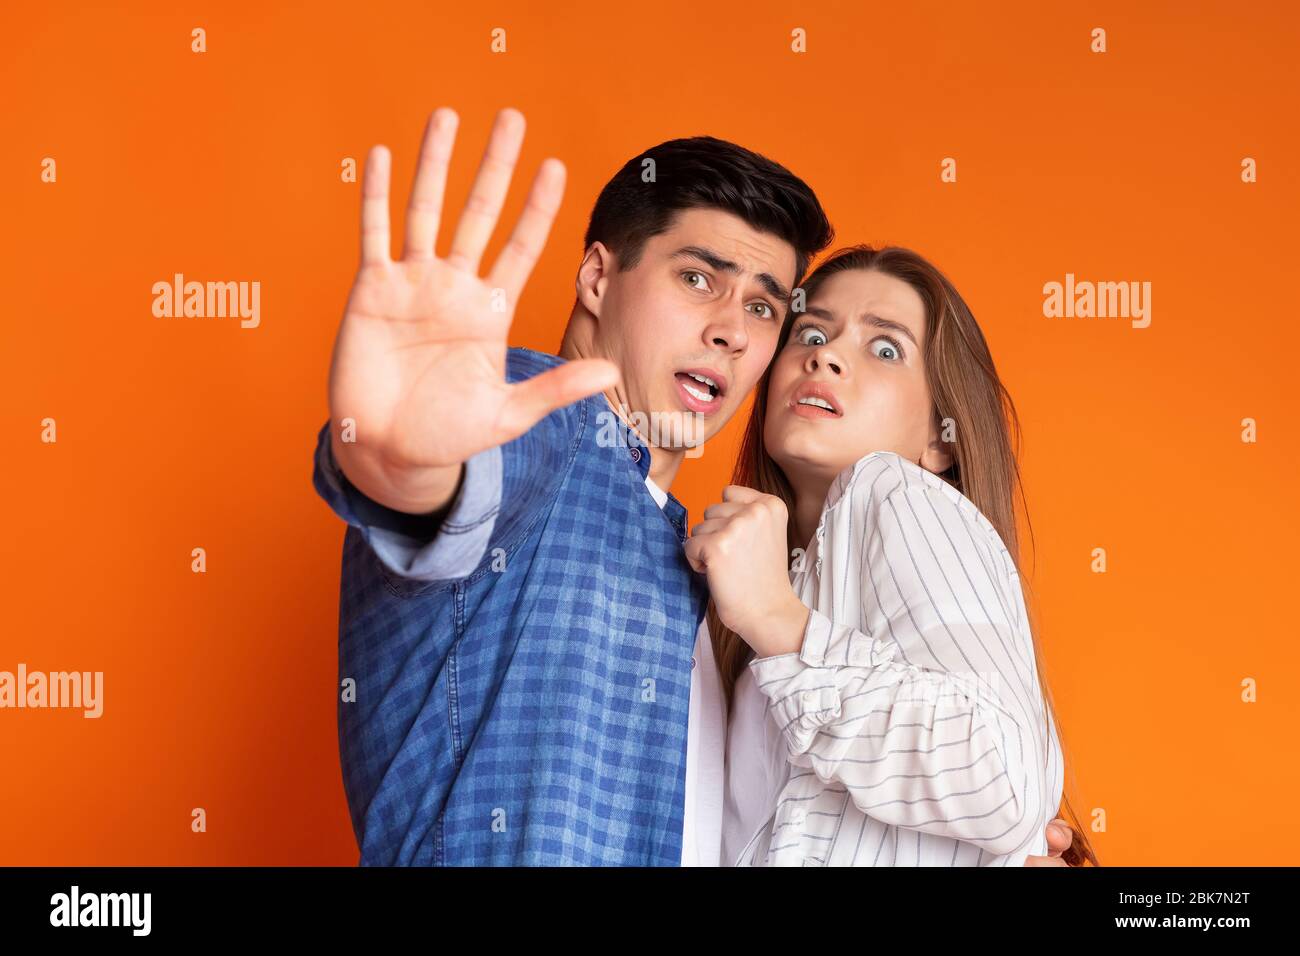 Guy protects frightened girl on orange background Stock Photo